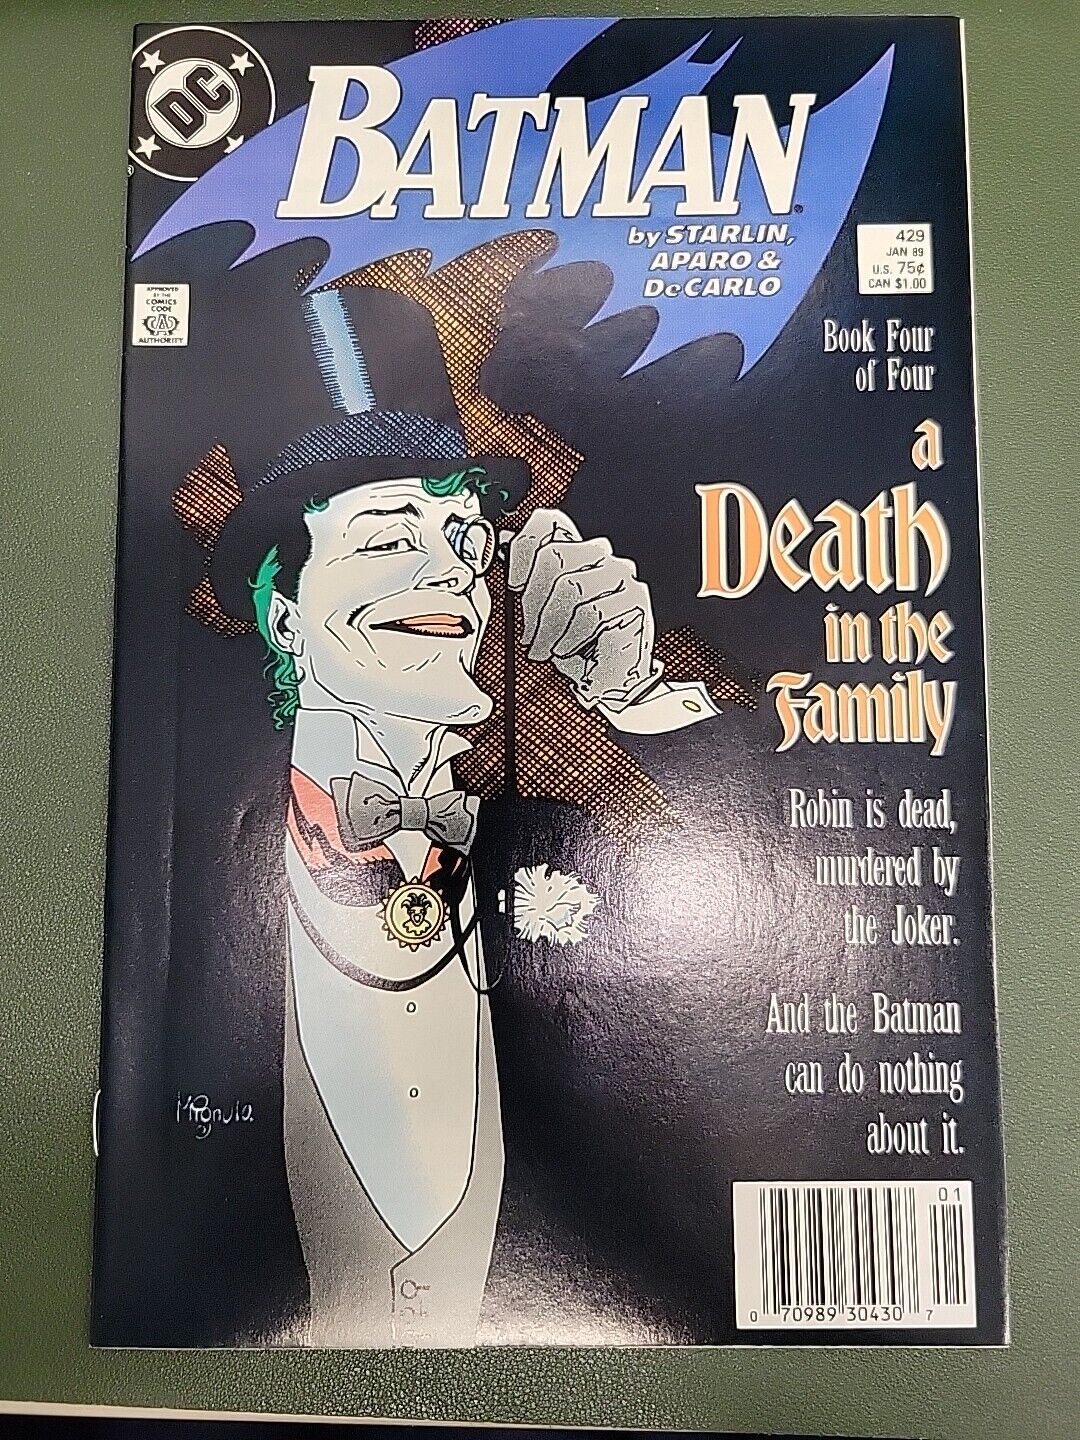 BATMAN #429 ( 1988 DC Comics ) - A Death In The Family - Part 4 Of 4 Copy 3